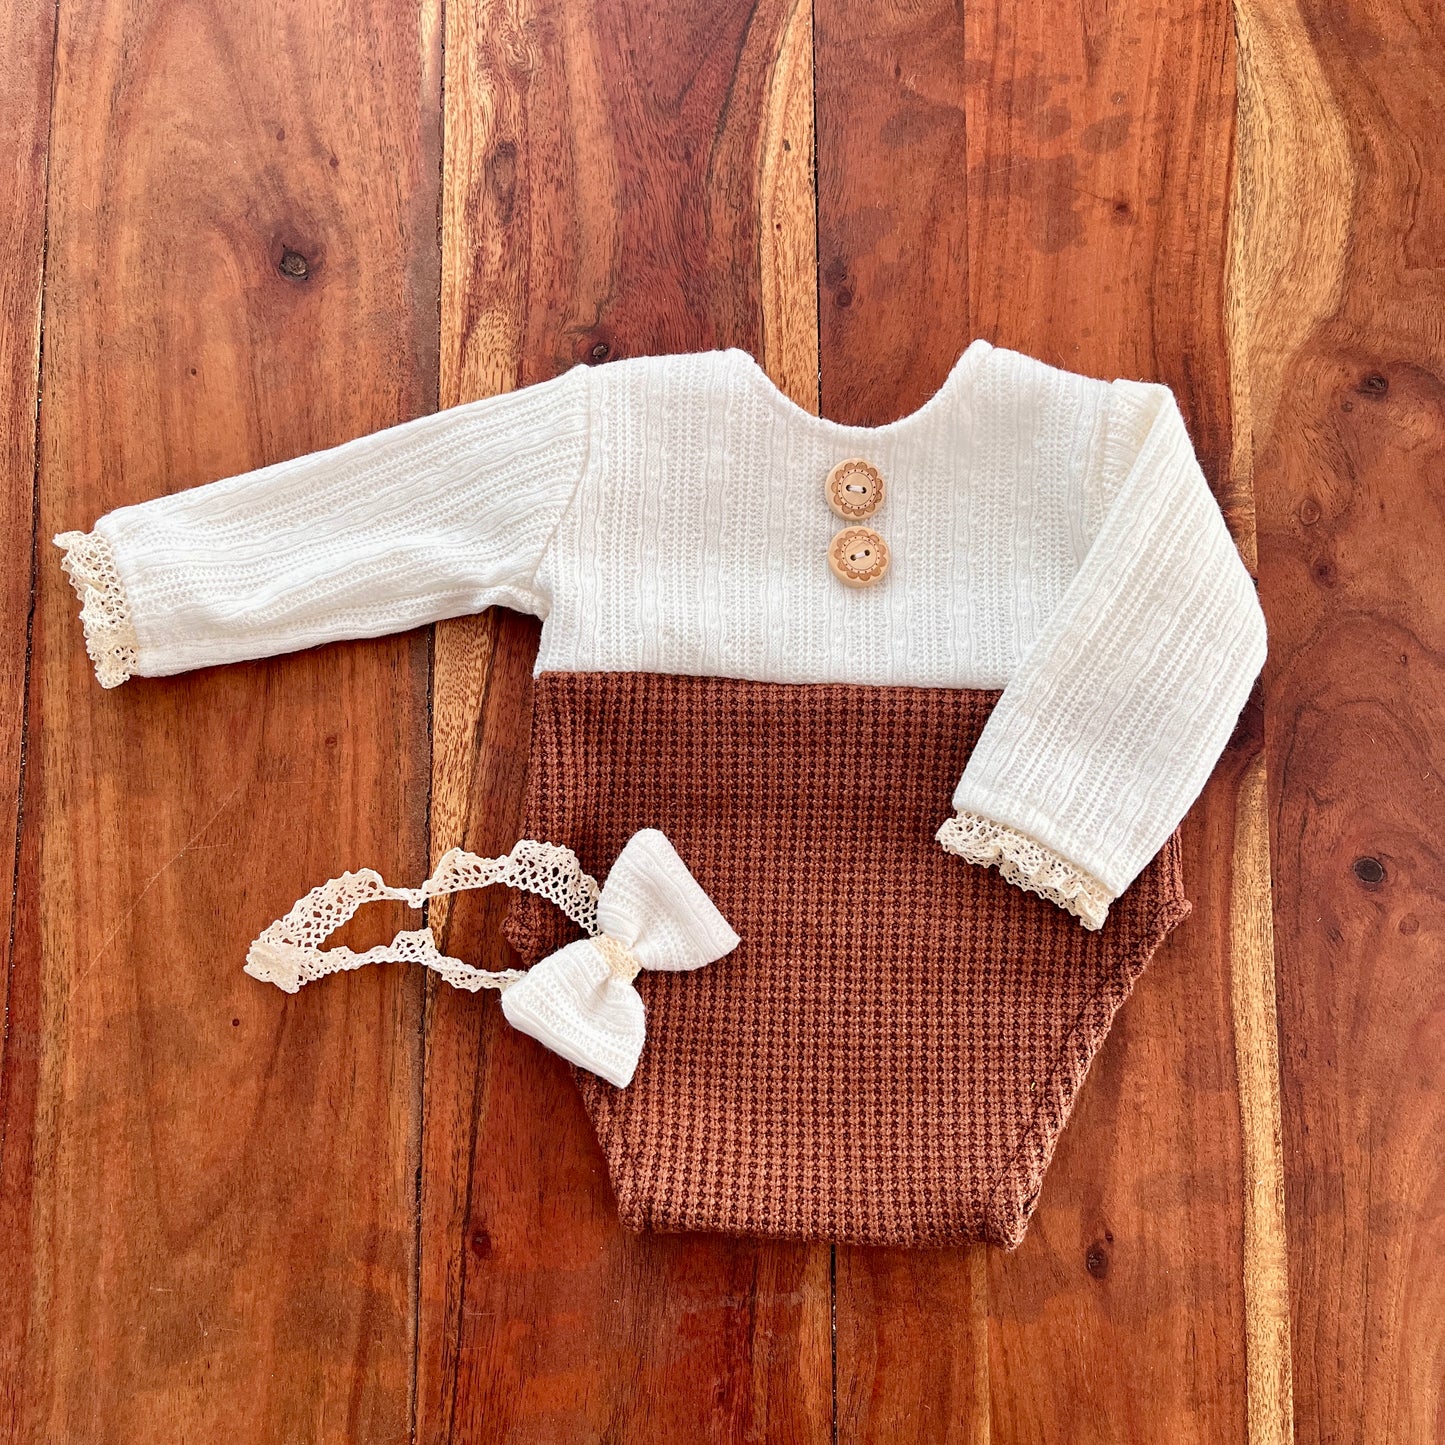 Mary cremefarbenes und braunes Neugeborenen-Fotografie-Requisiten-Outfit für Mädchen